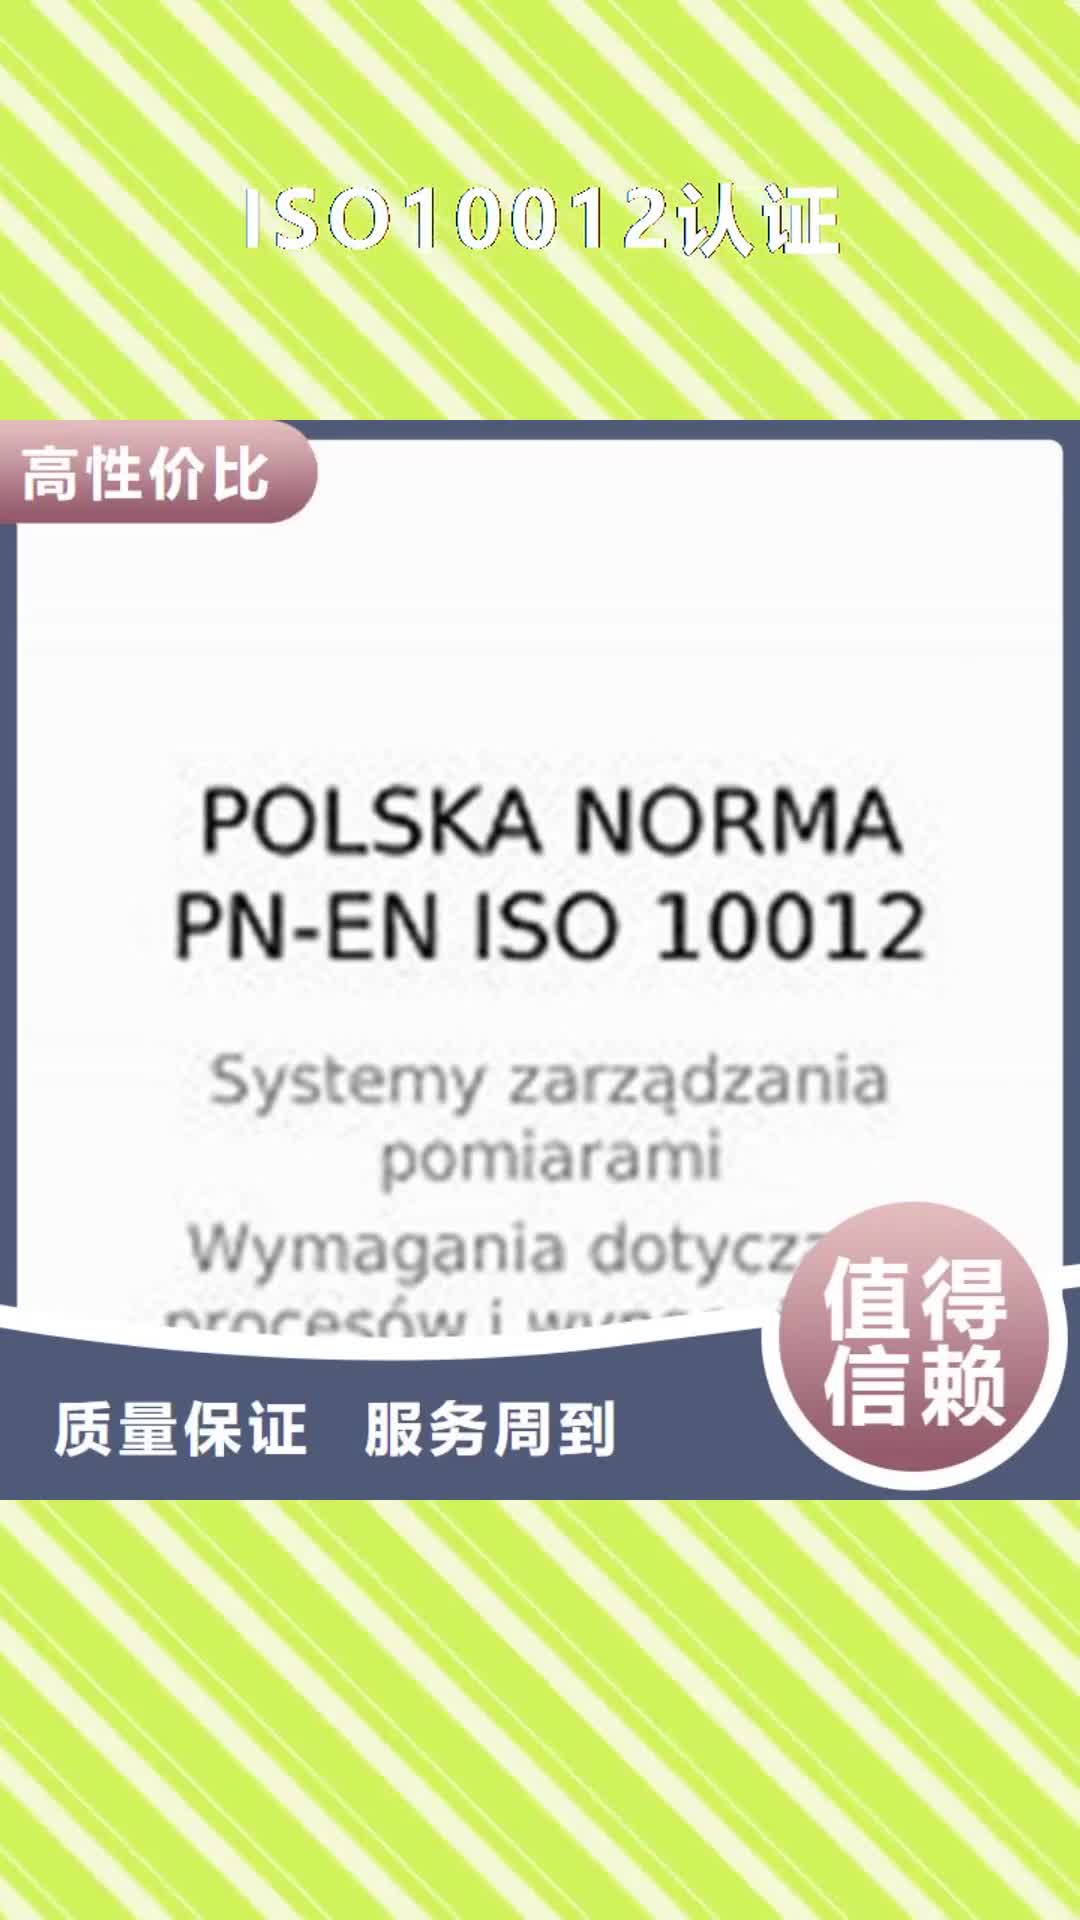 西藏【ISO10012认证】,ISO13485认证一站式服务